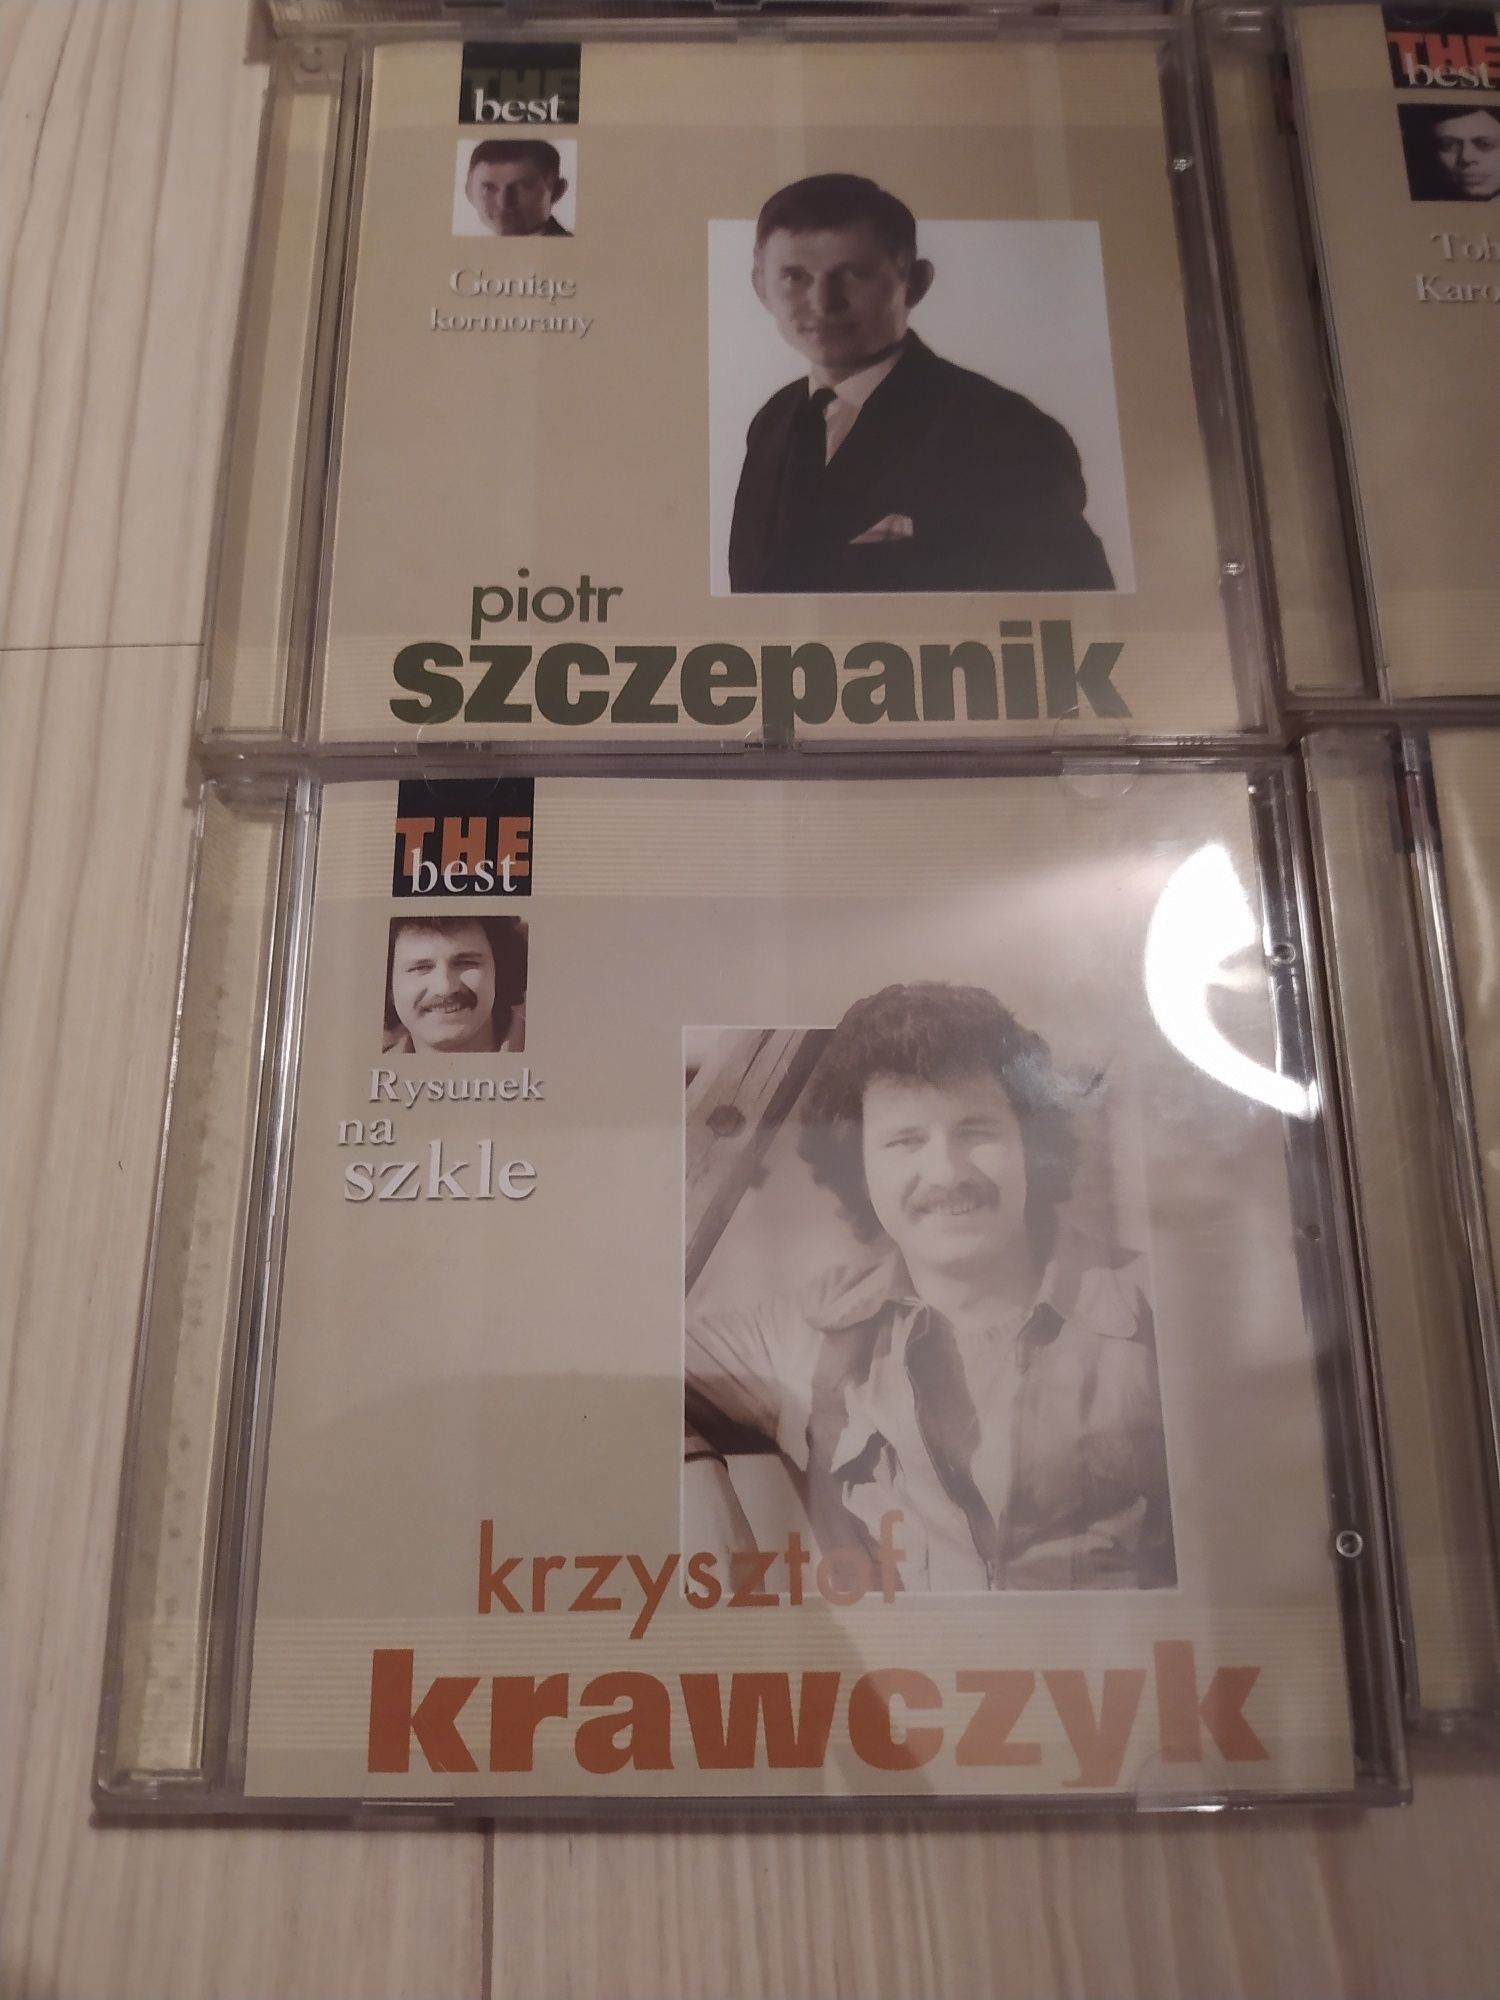 The Best Of Krawczyk/Perfect/Homoni/Szczepanik/Rybiński/Orkiestra/Kome